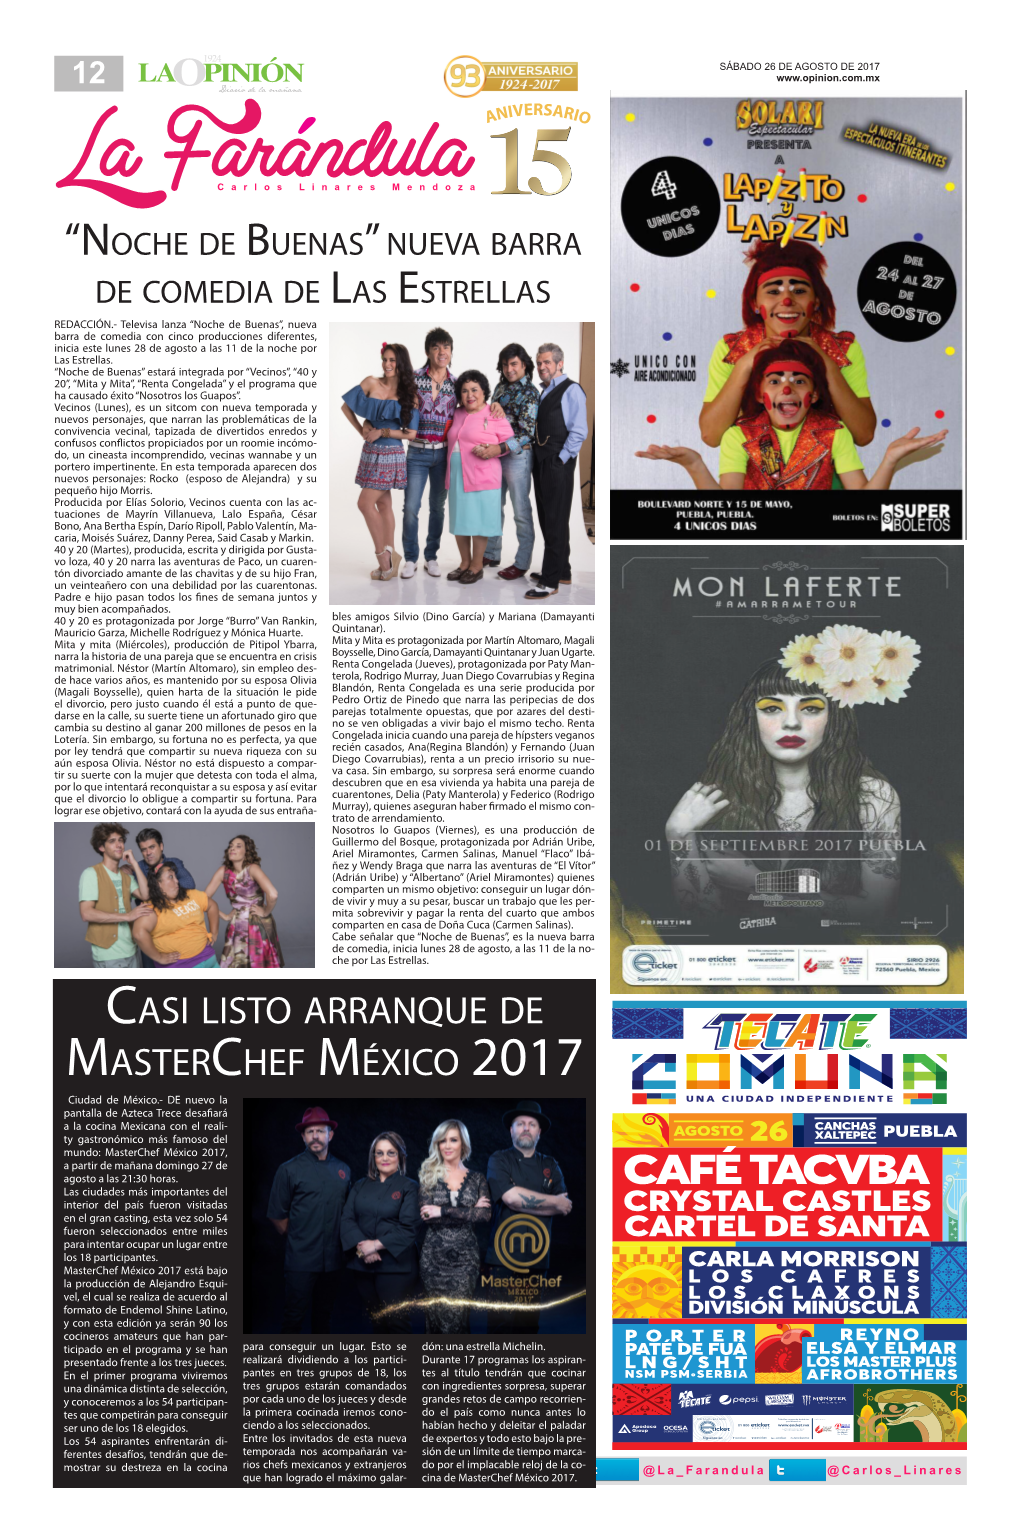 CASI LISTO Arranque DE MASTERCHEF MÉXICO 2017